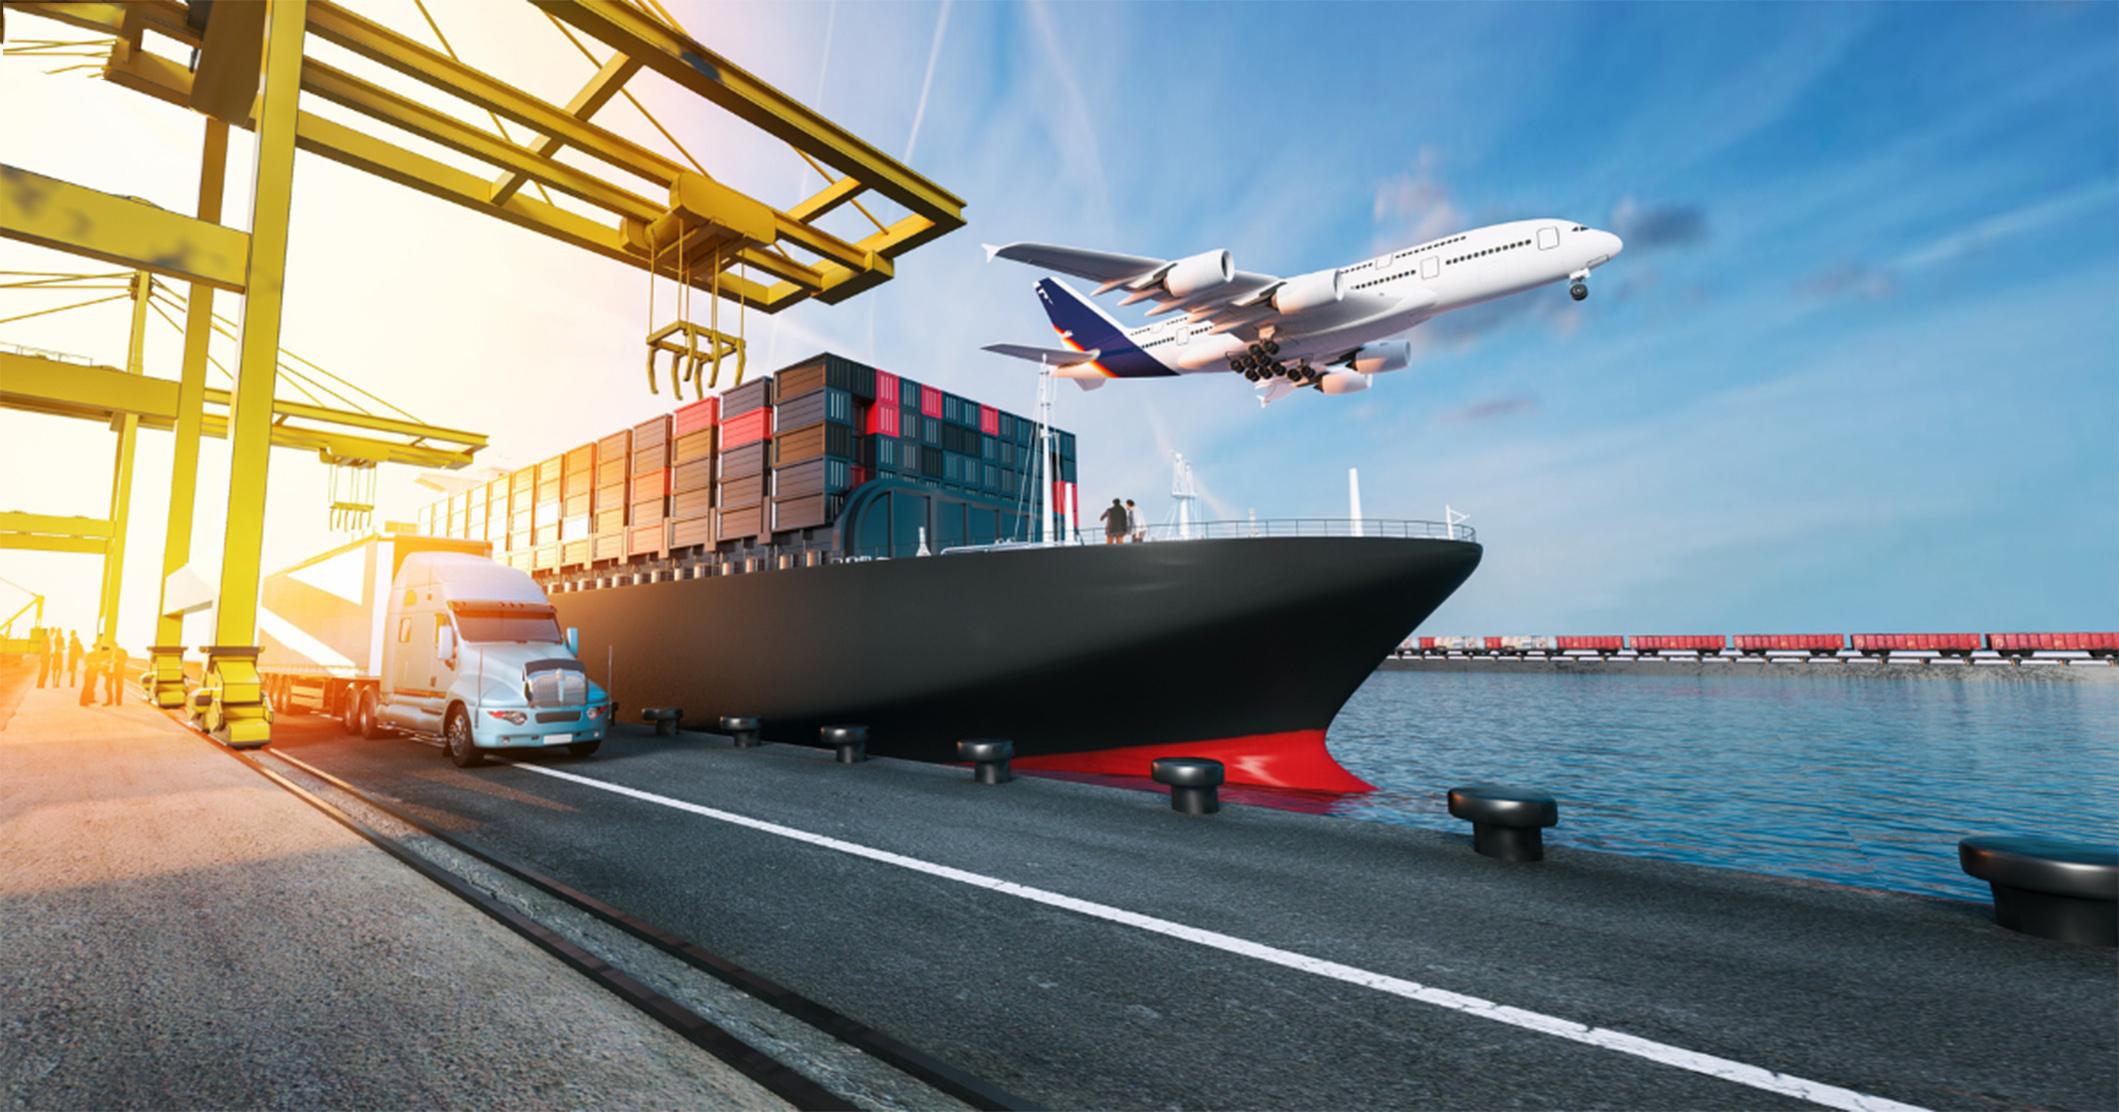 Công ty TNHH Tiếp Vận Dịch vụ Hàng Hóa Đặc Biệt – Special Cargo Services Co., Ltd (SCS)